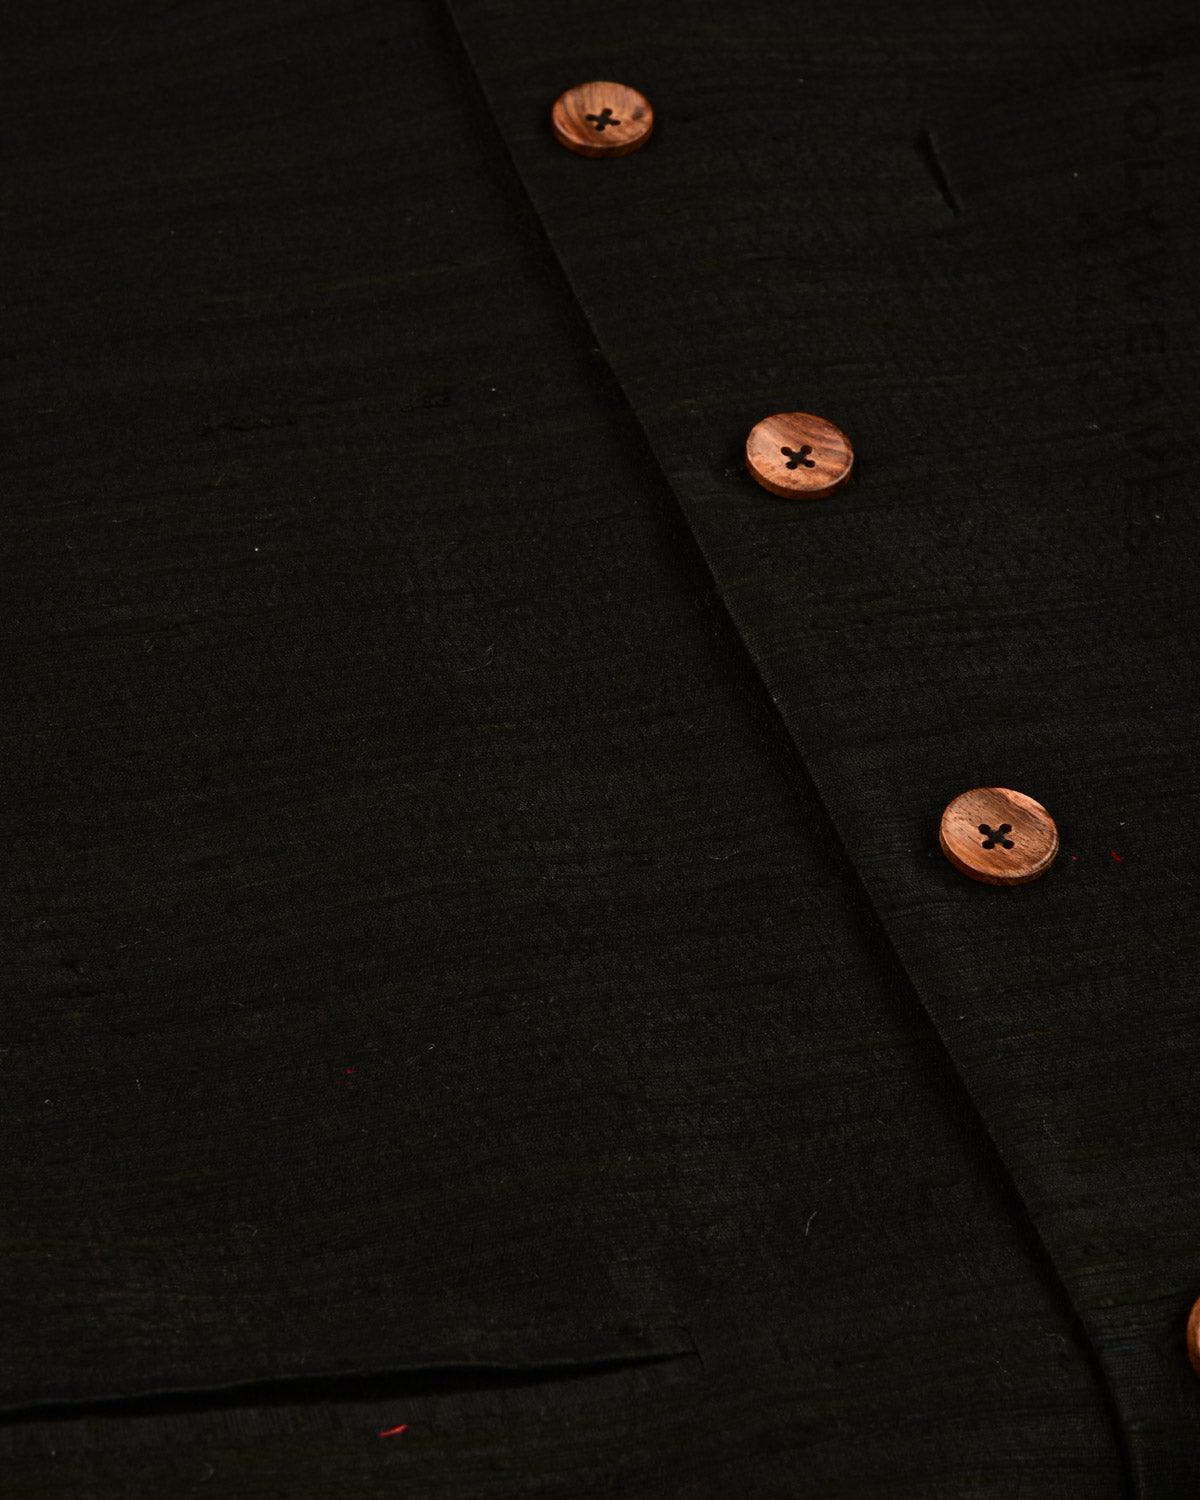 Black Banarasi Textured Handwoven Raw Silk Mens Modi Jacket - By HolyWeaves, Benares